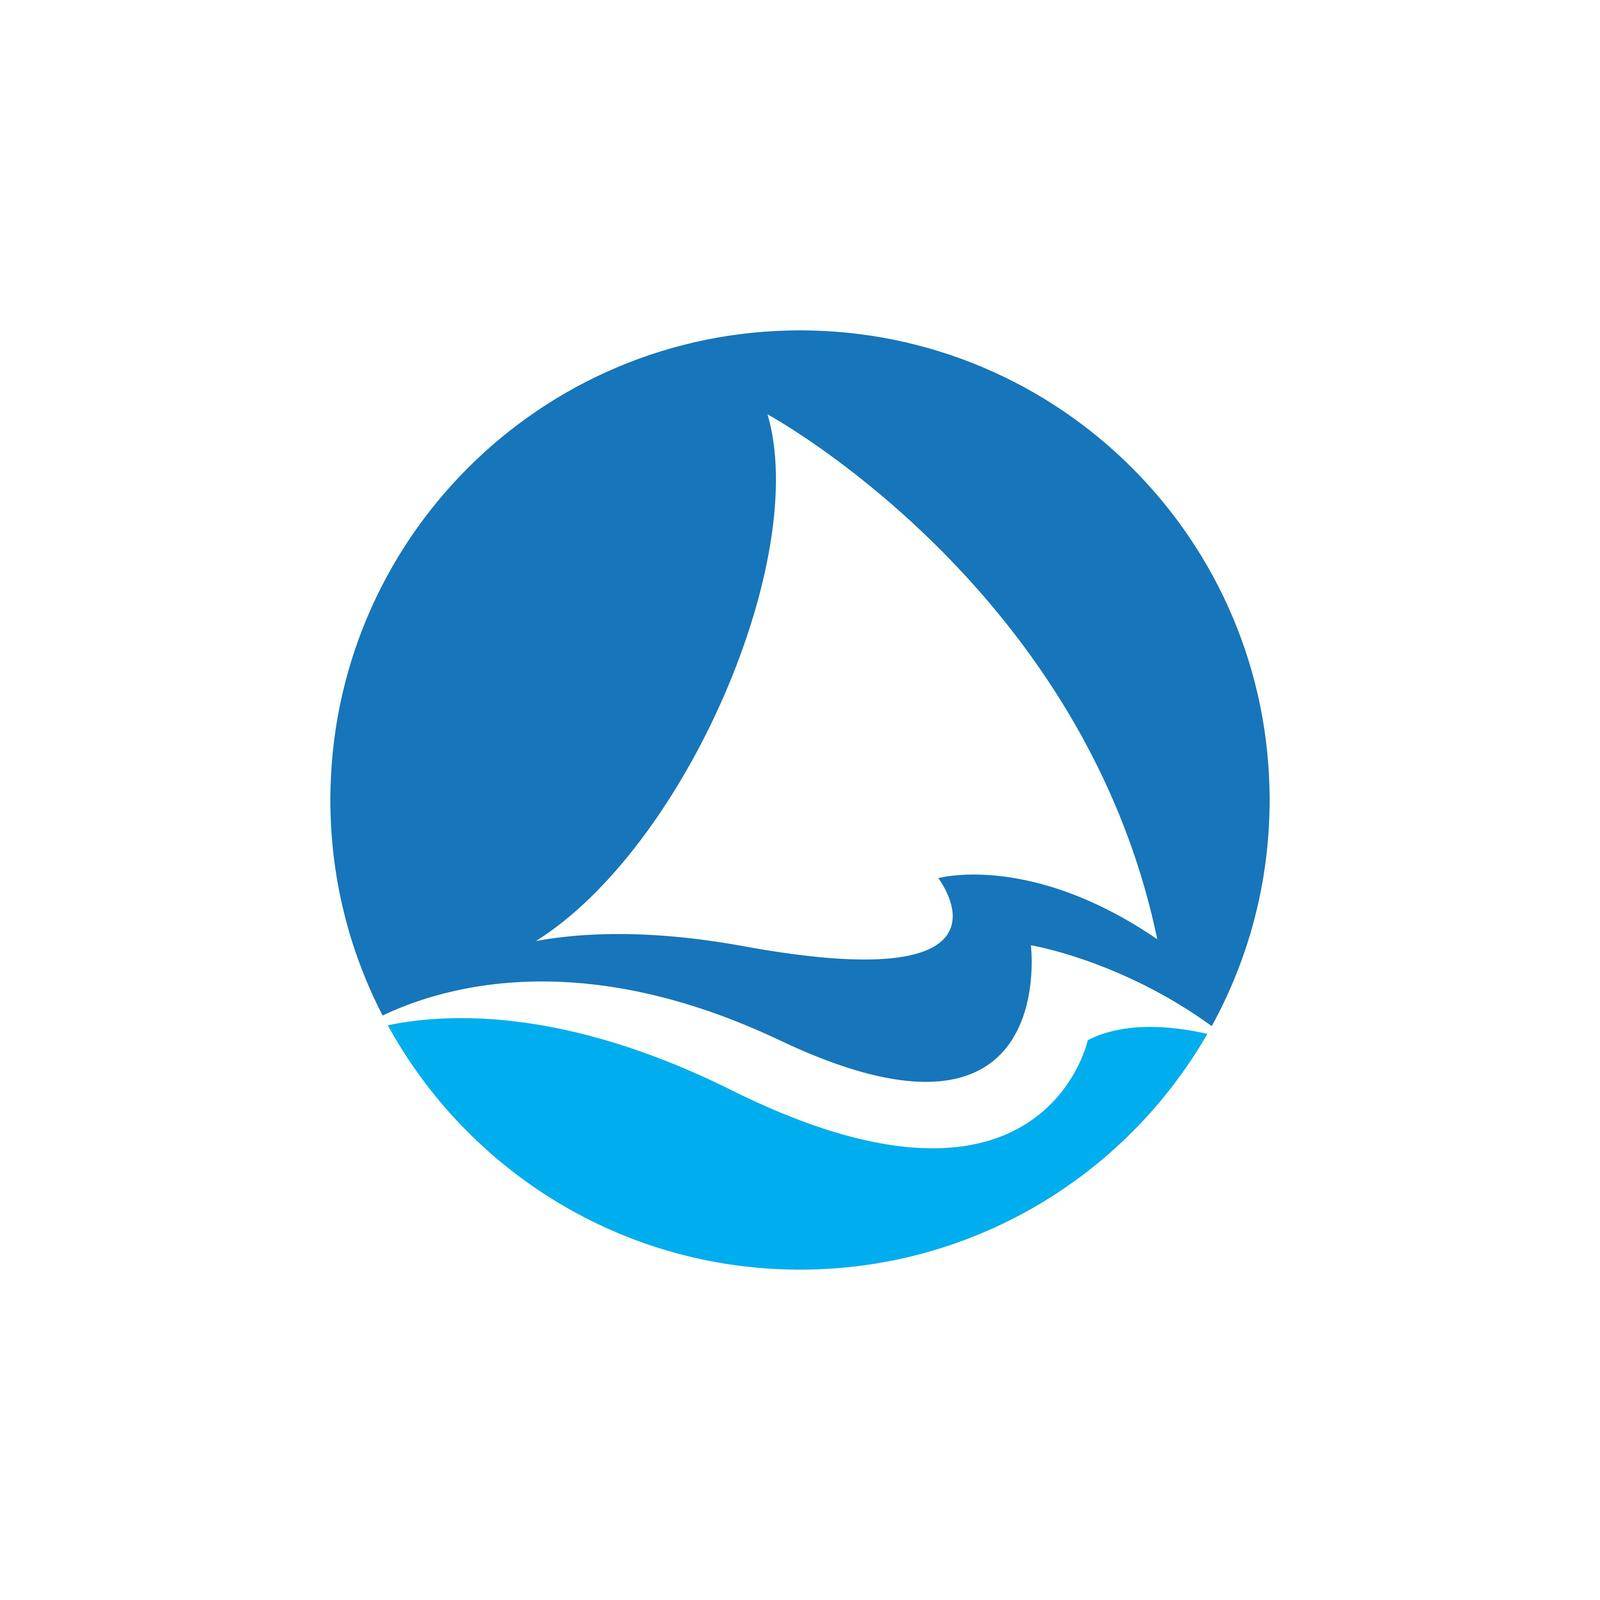 Shark fin logo design by Attades19